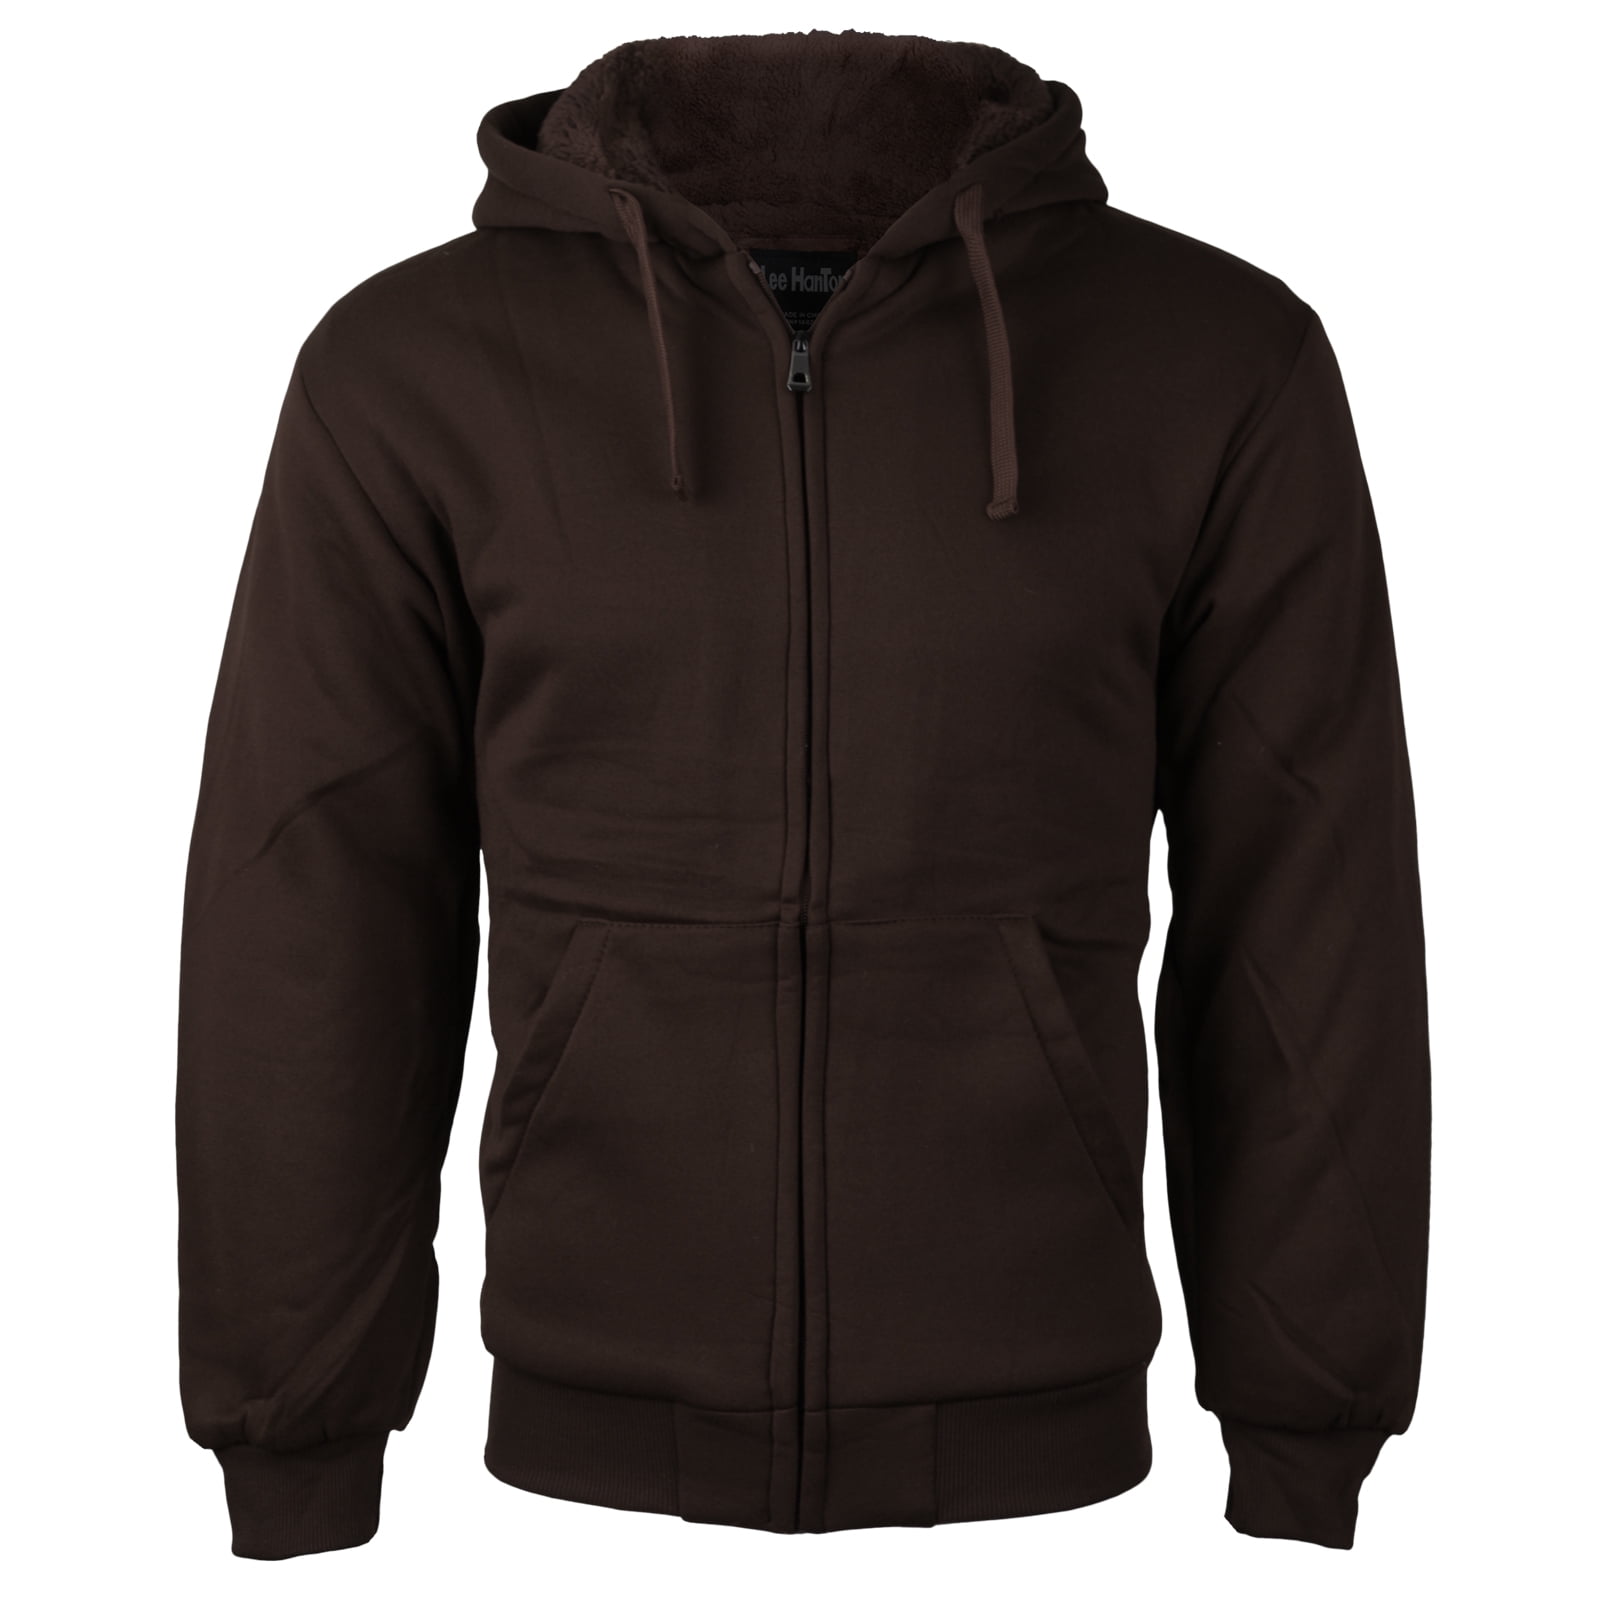 Men's Premium Athletic Soft Sherpa Lined Fleece Zip Up Hoodie Sweater